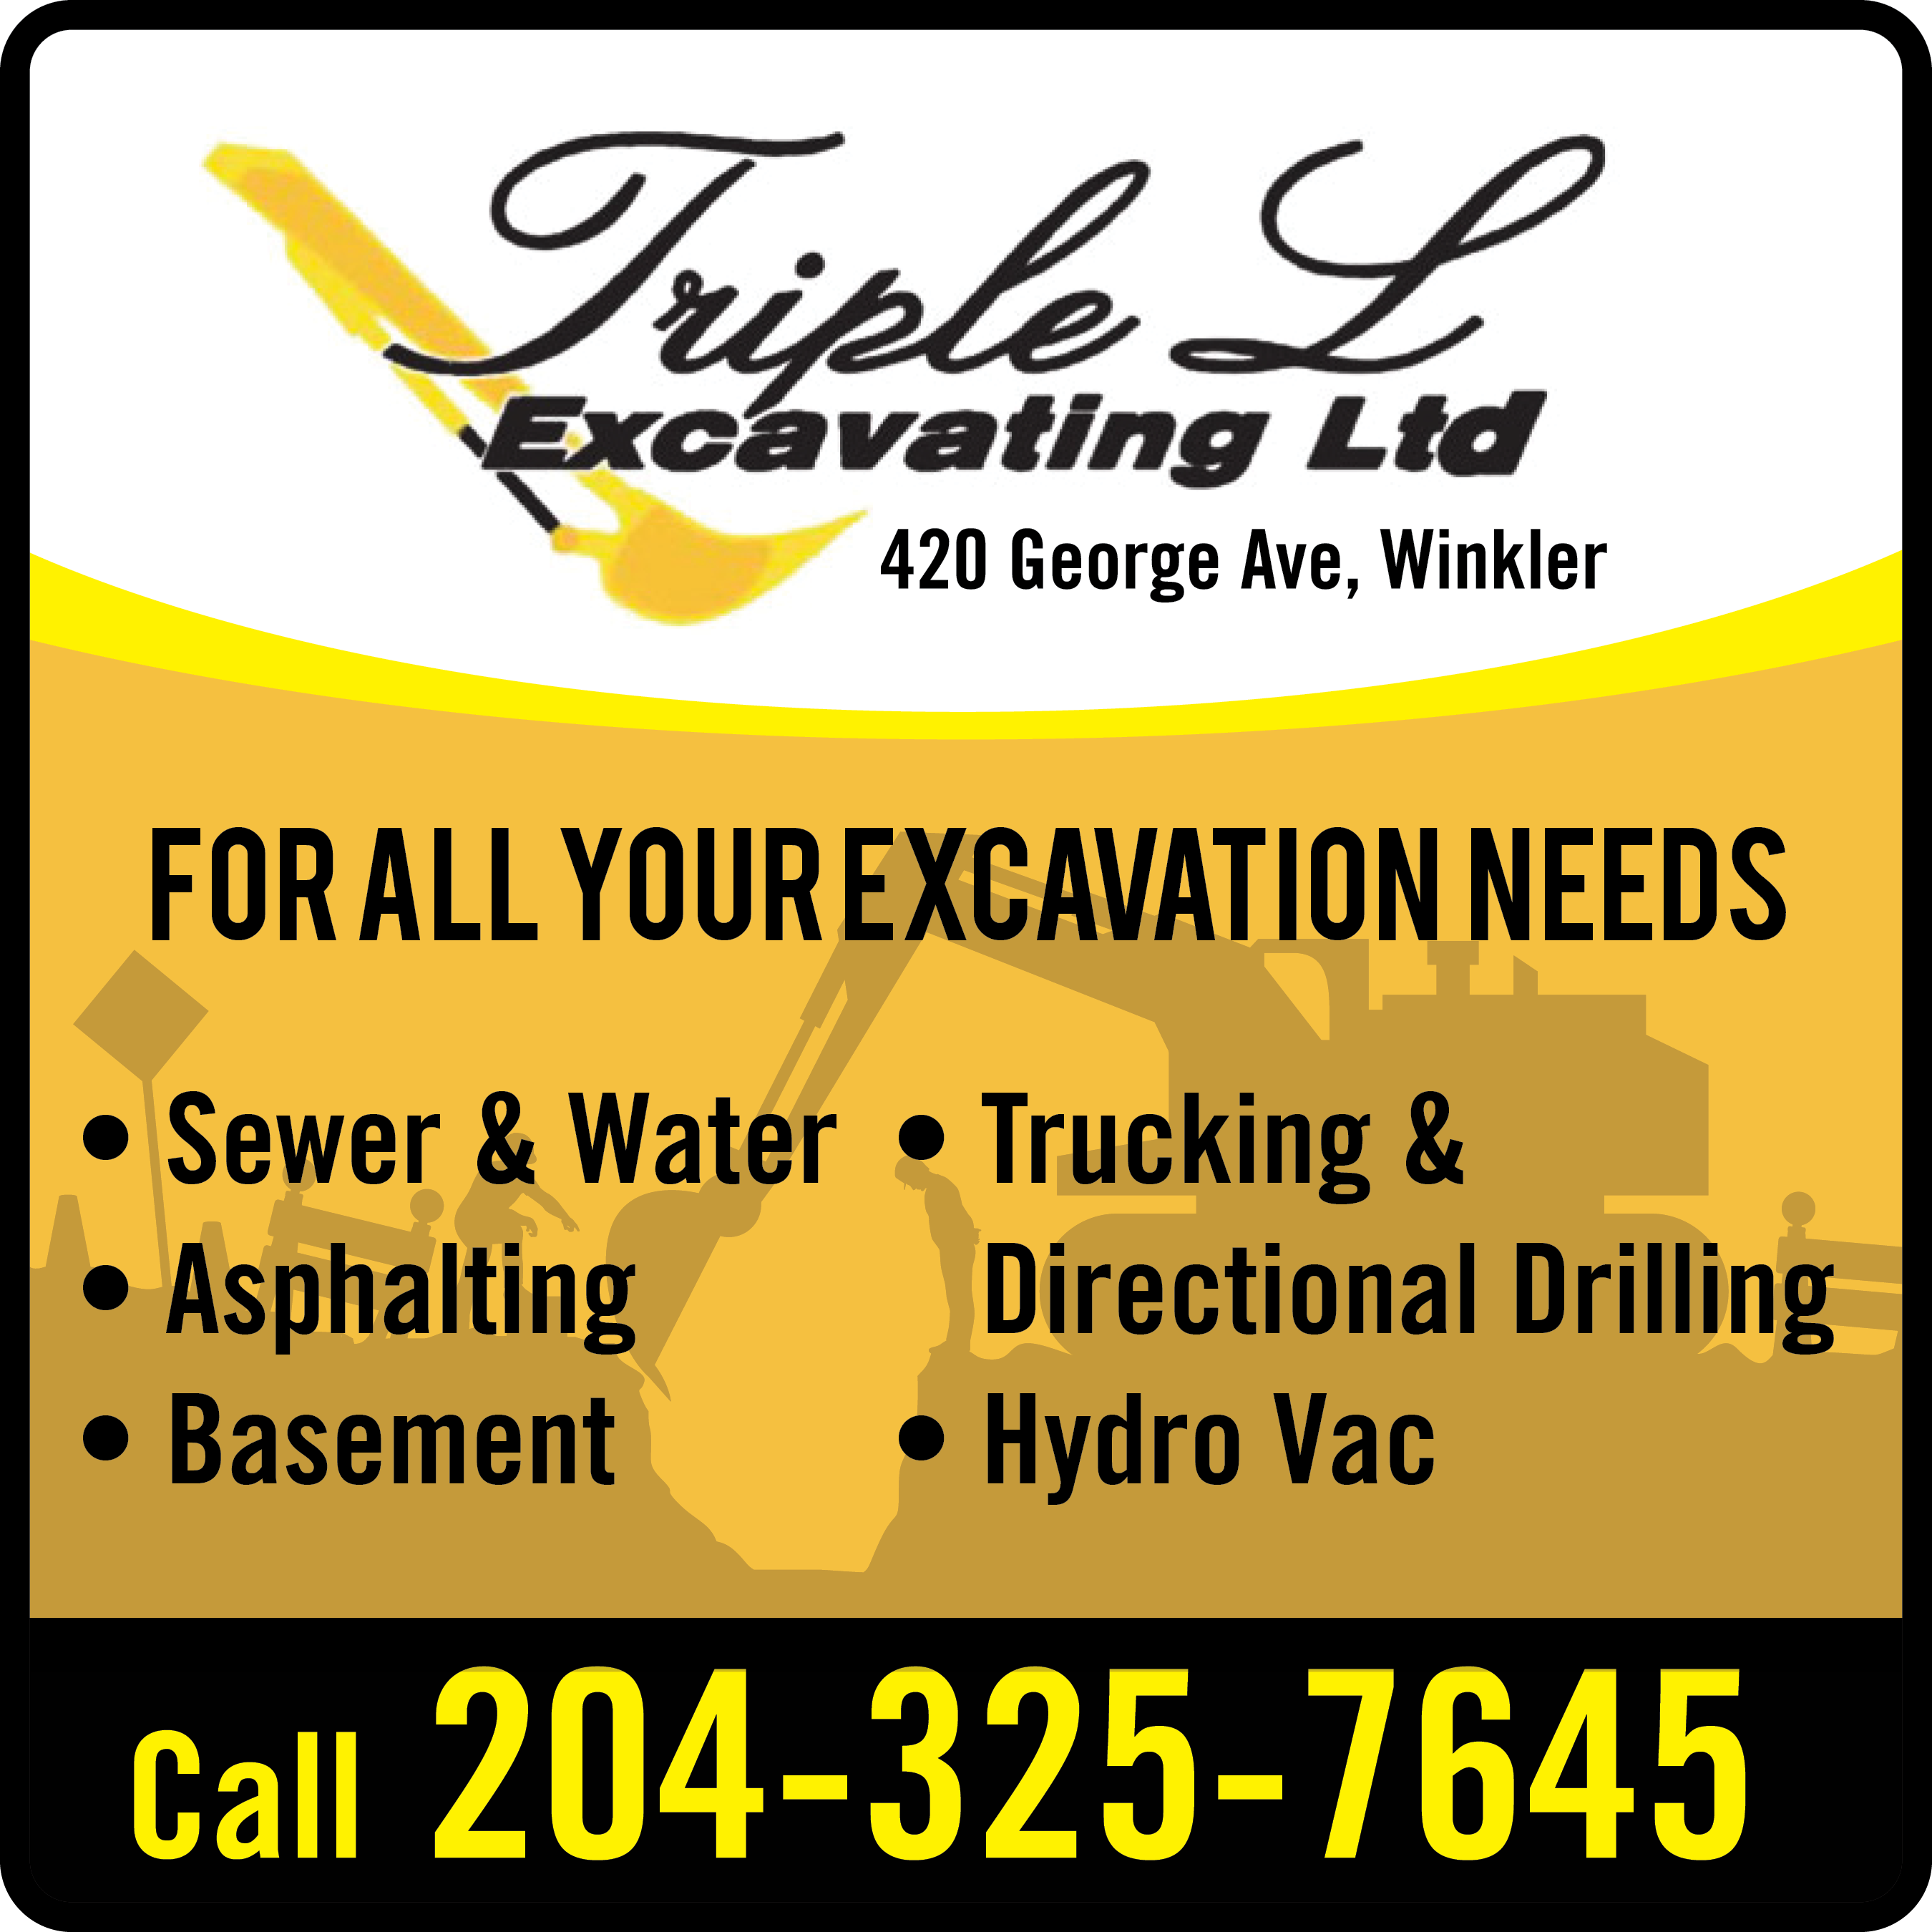 Triple L Excavating Ltd